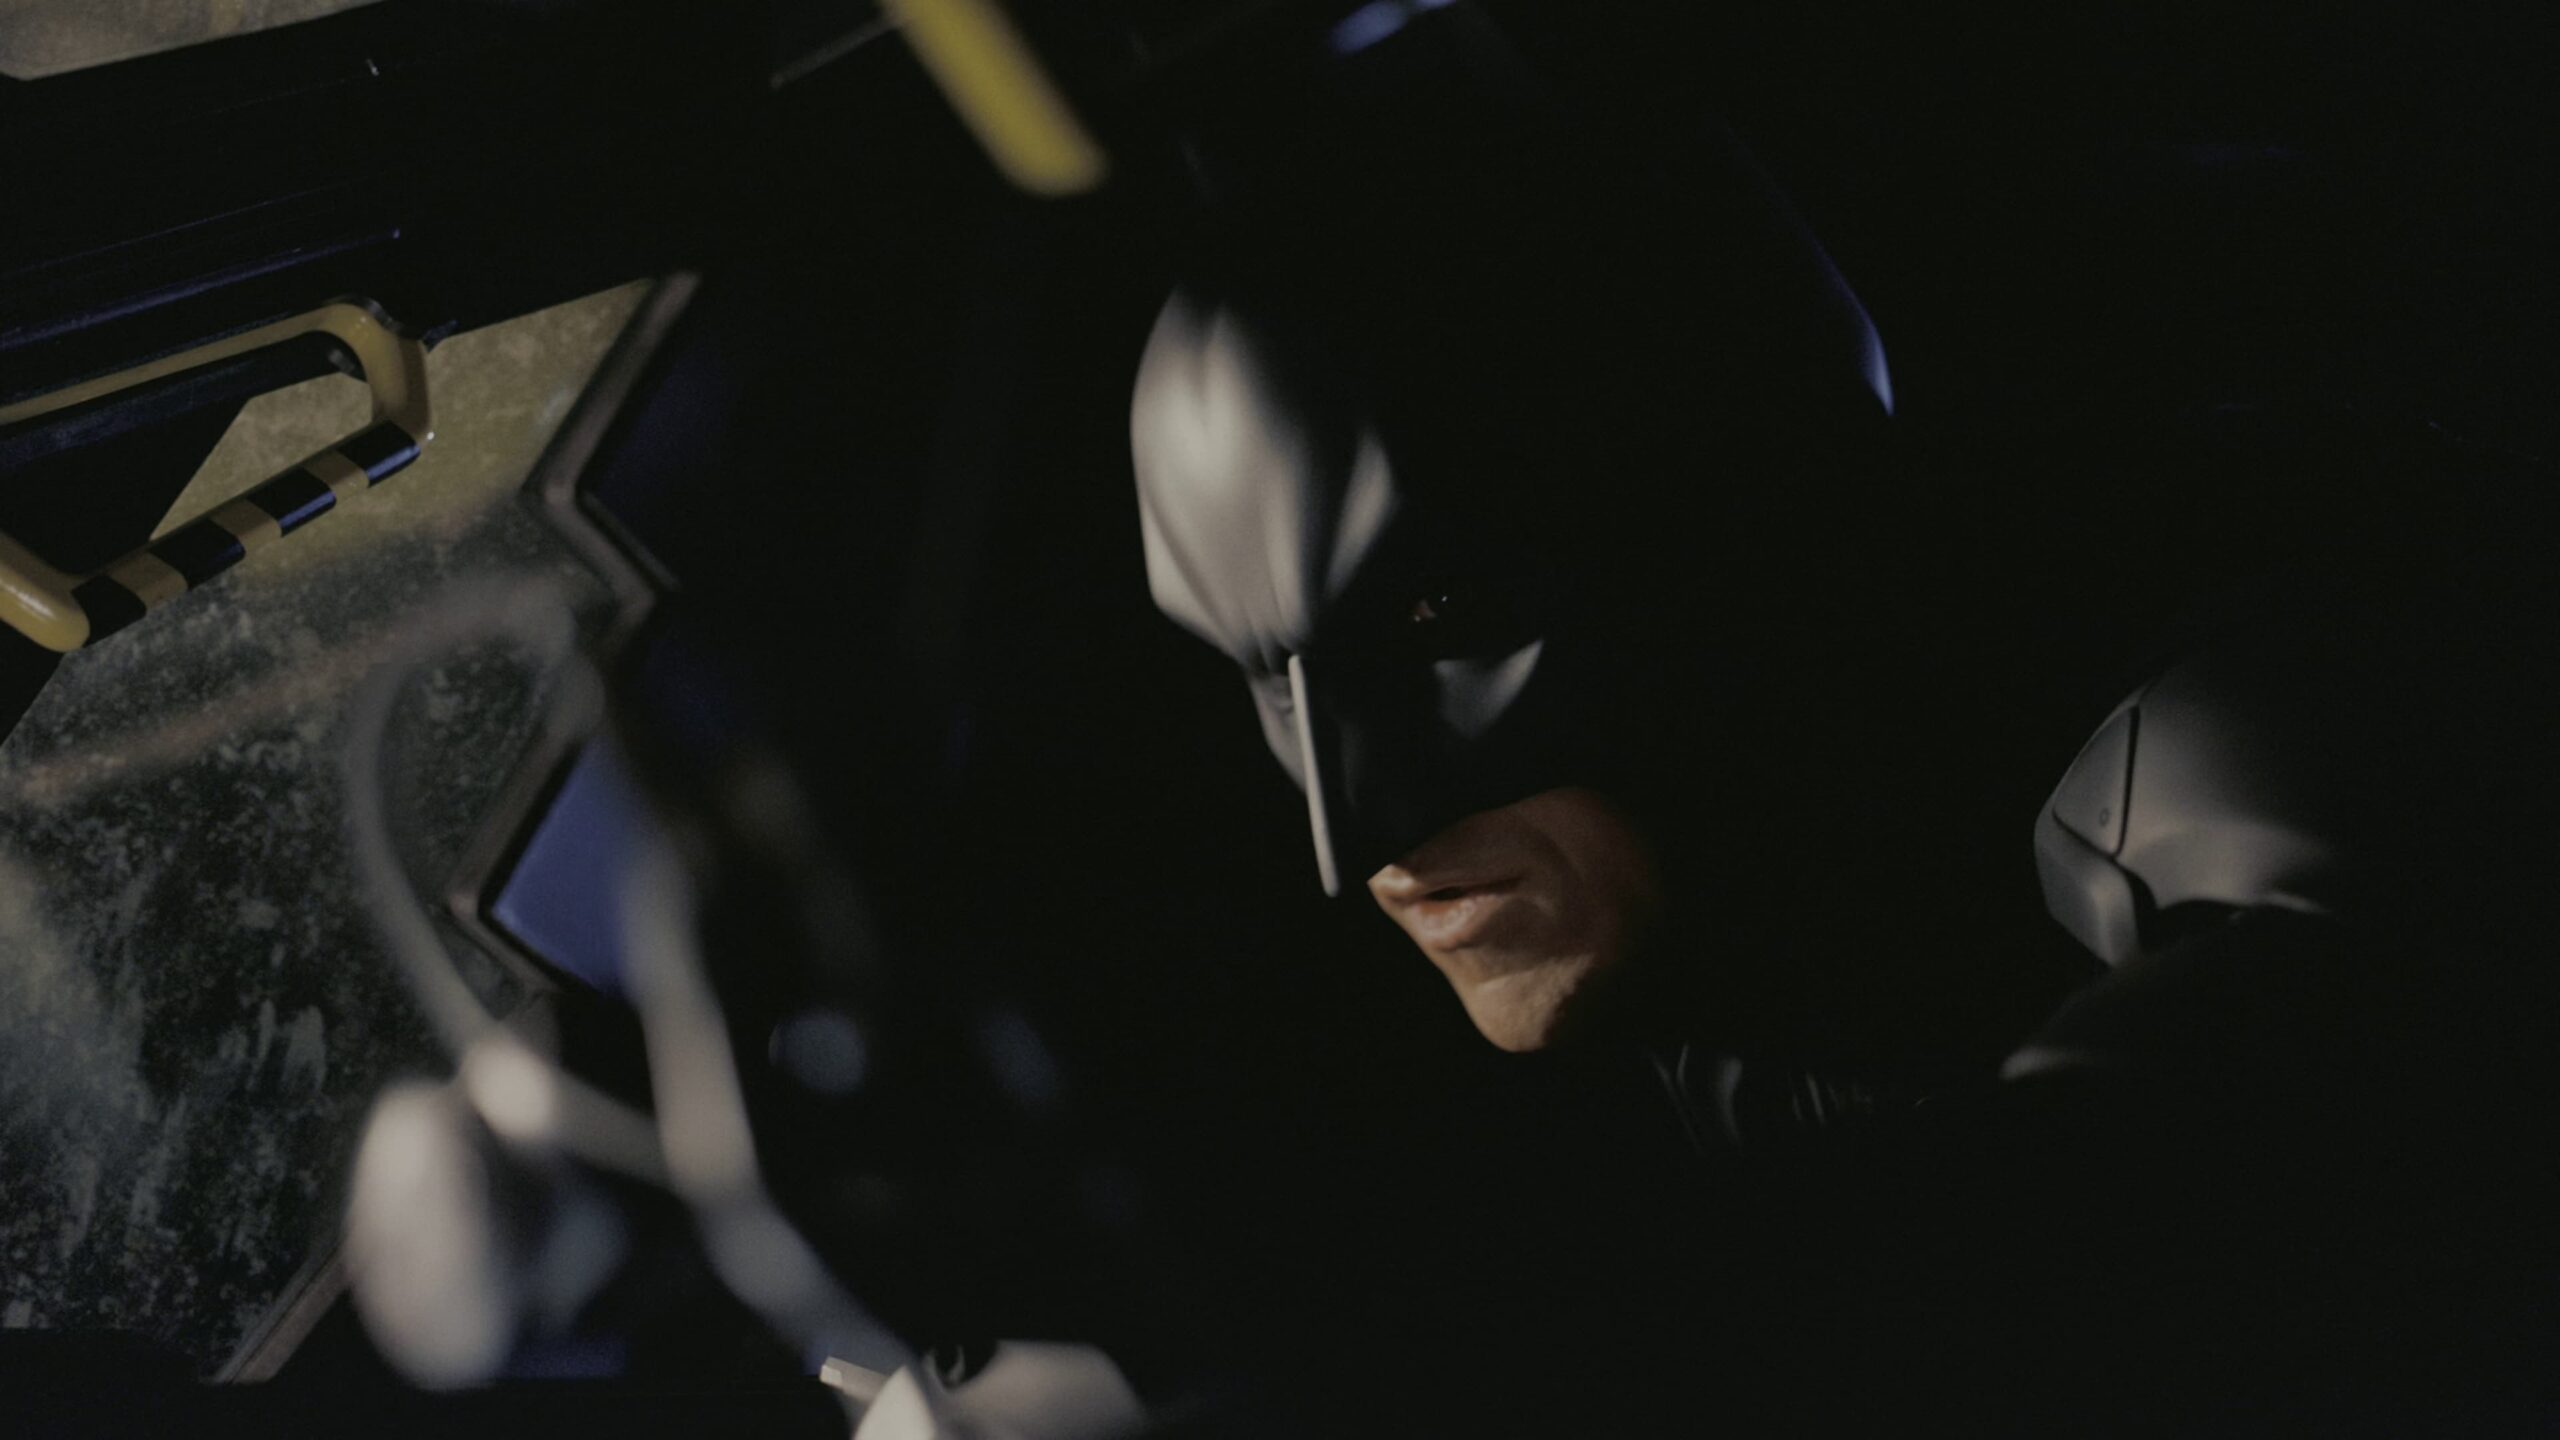 Batman Mask and Costume